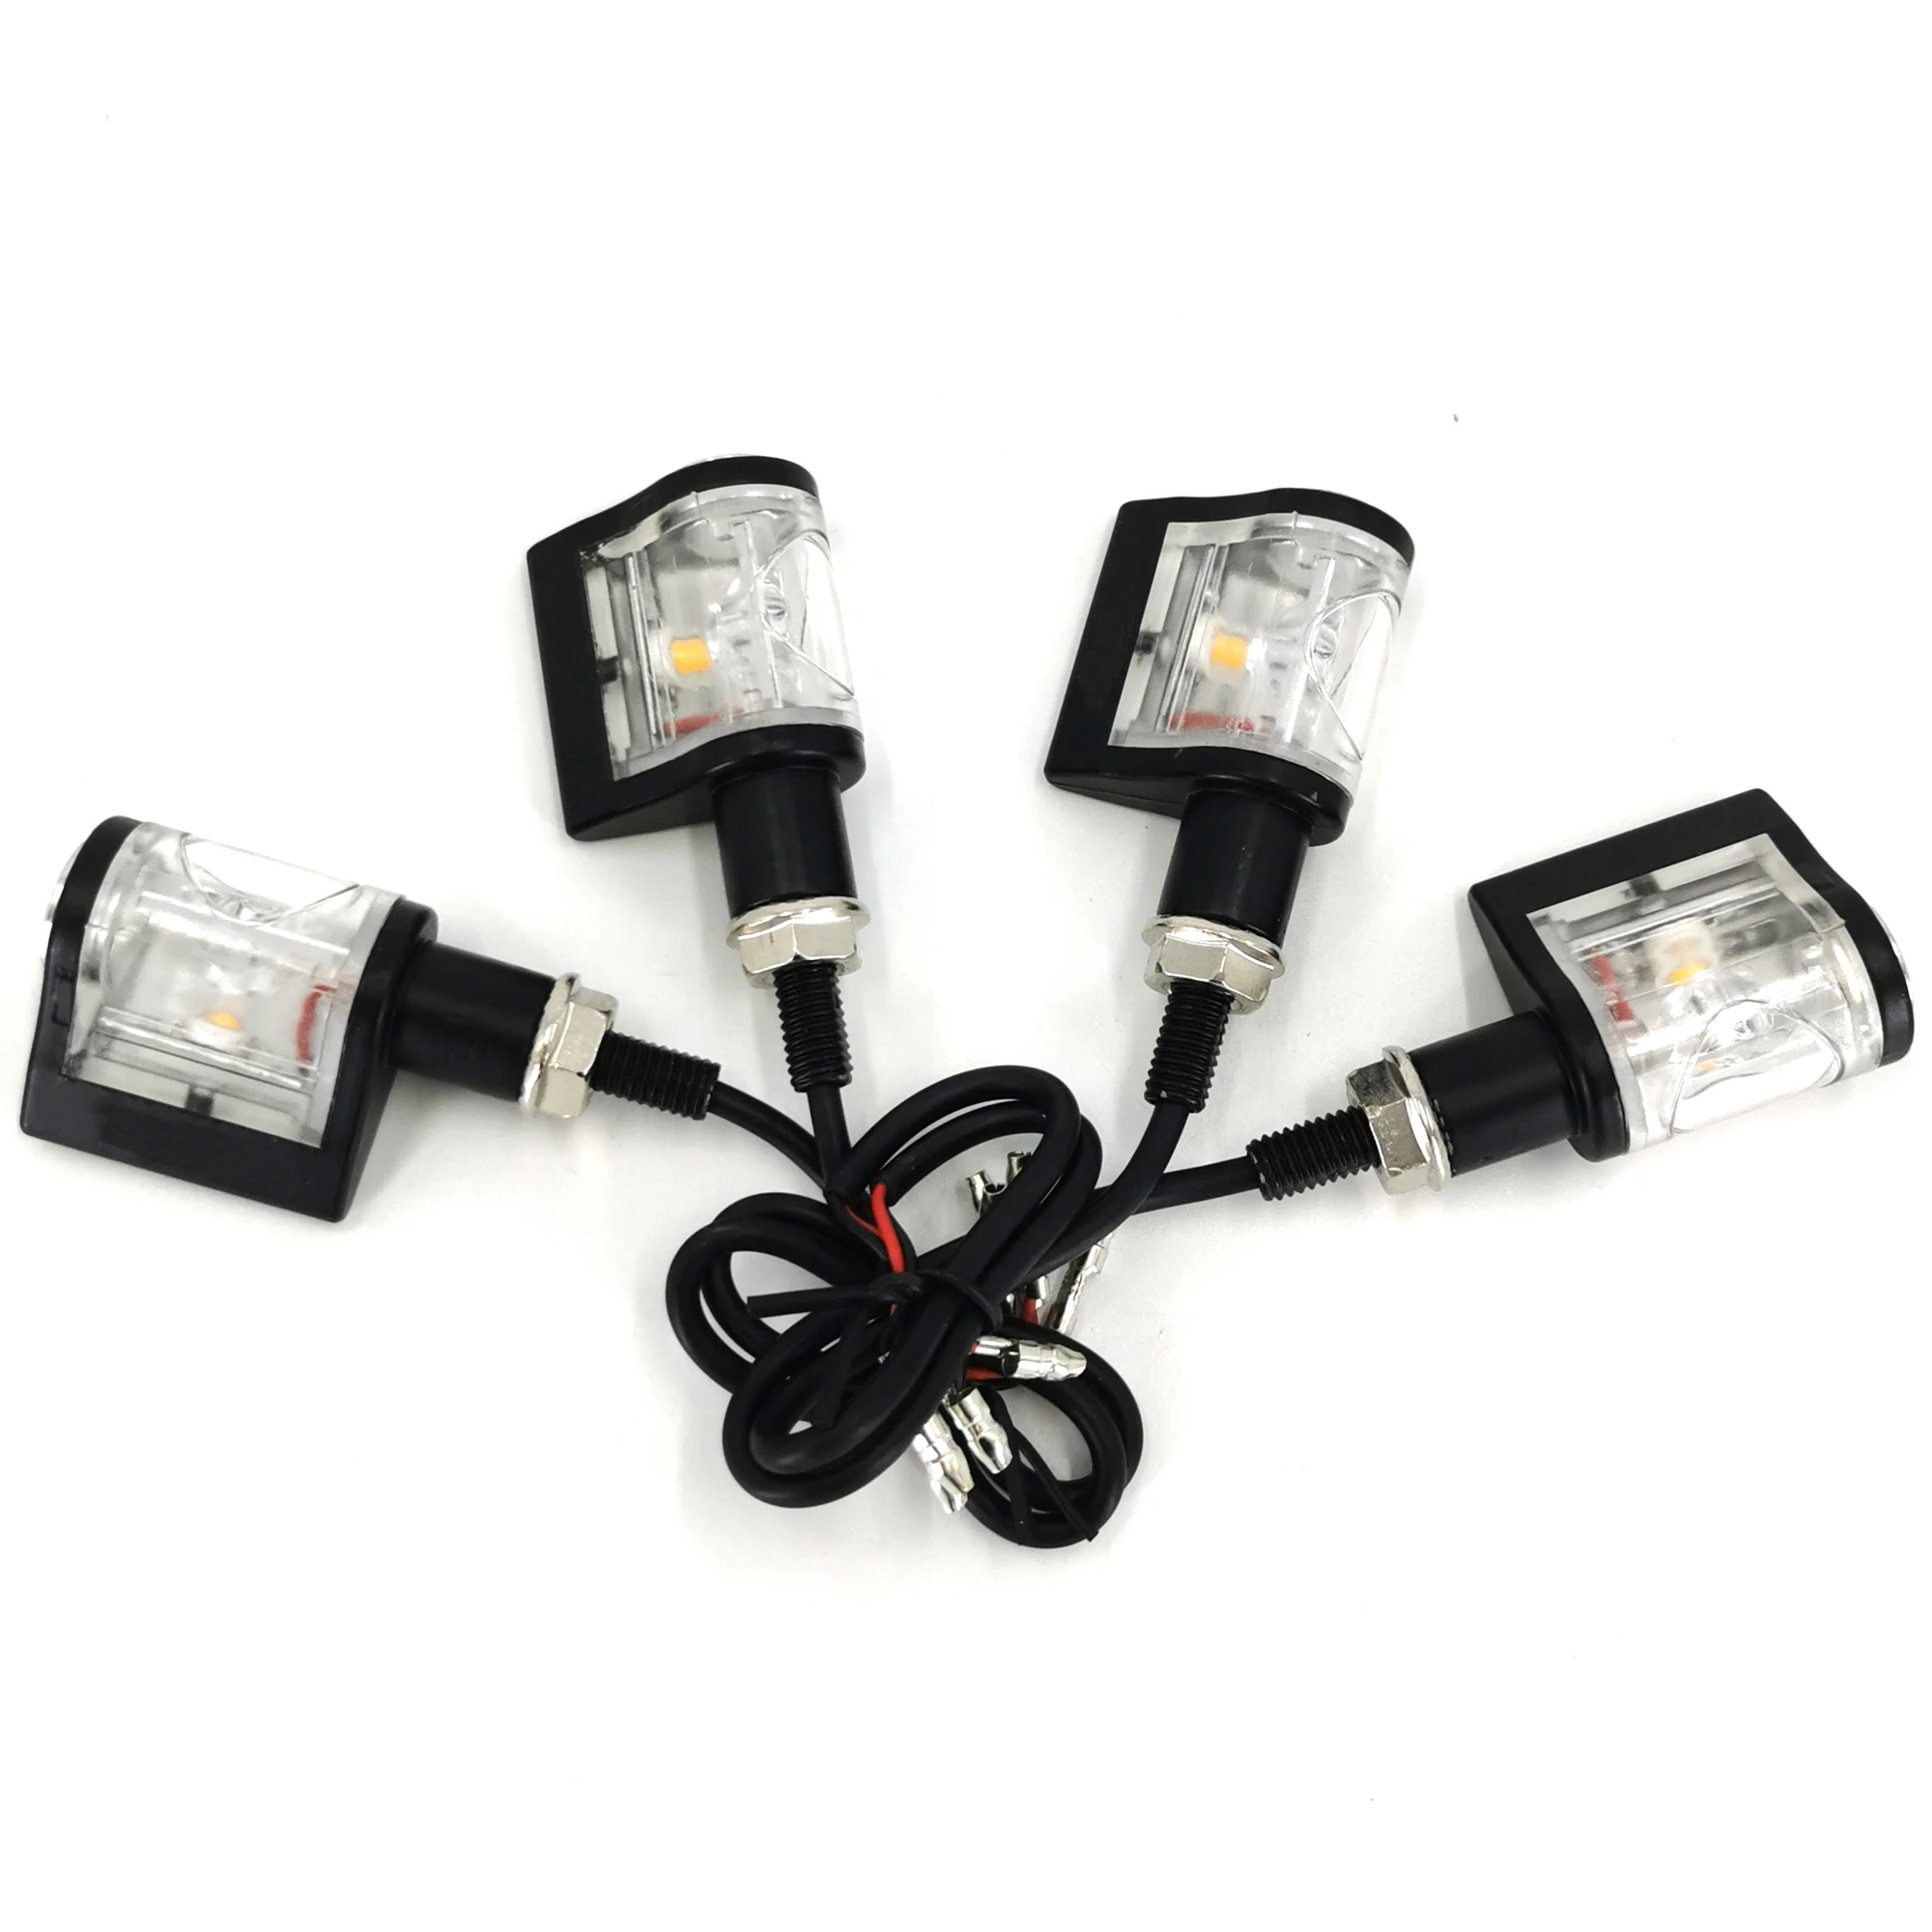 Intermitentes LED para motocicleta, luces intermitentes de 12V y 8mm para Moto, Scooter Scrambler, Motocross, Dirt Bike